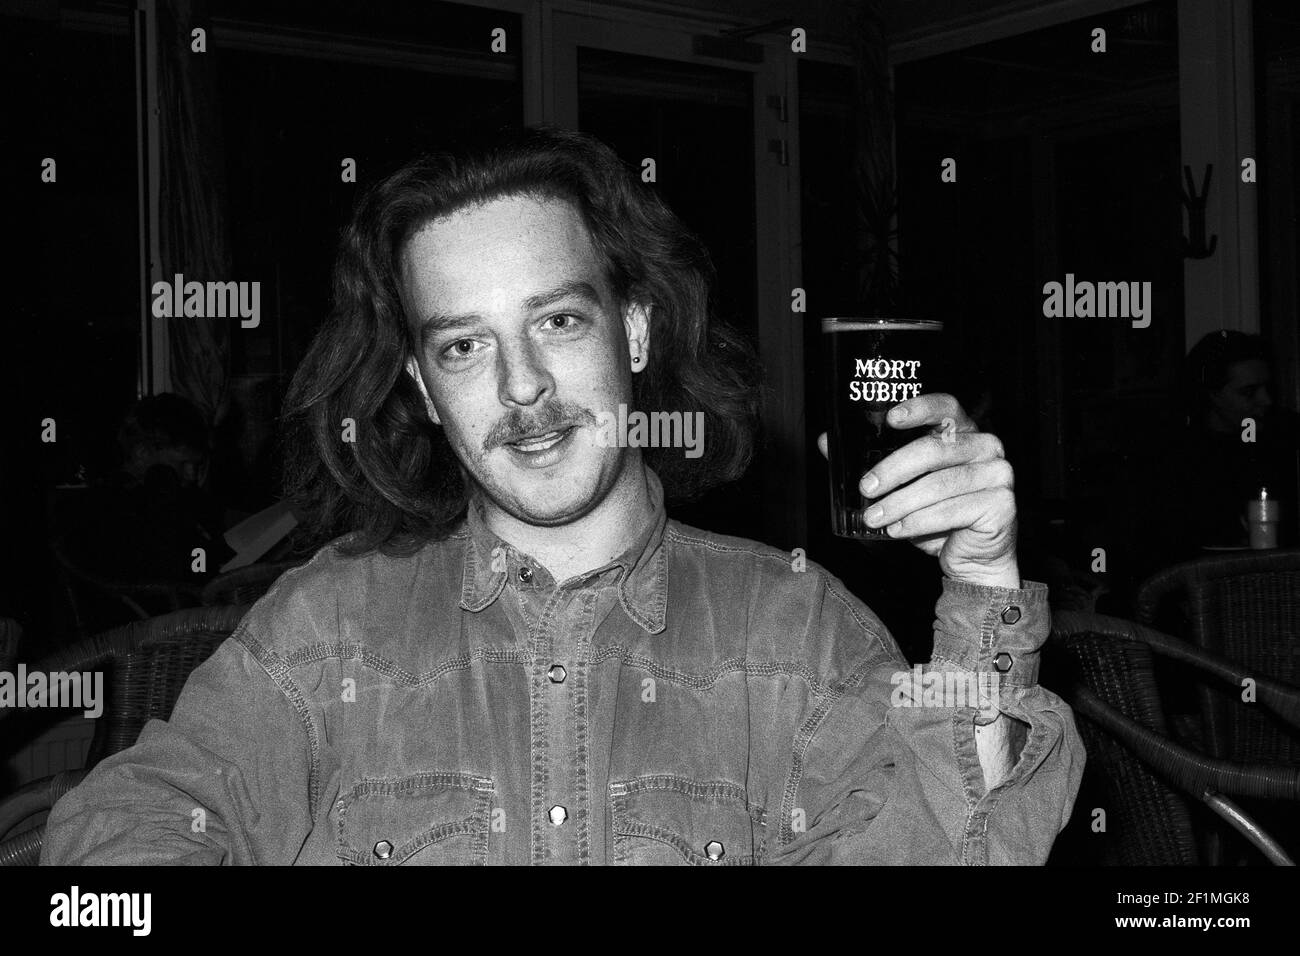 Tilburg, Paesi Bassi. Ritratto di un giovane adulto dai capelli lunghi che beve una birra artigianale Mort Subite. Foto Stock